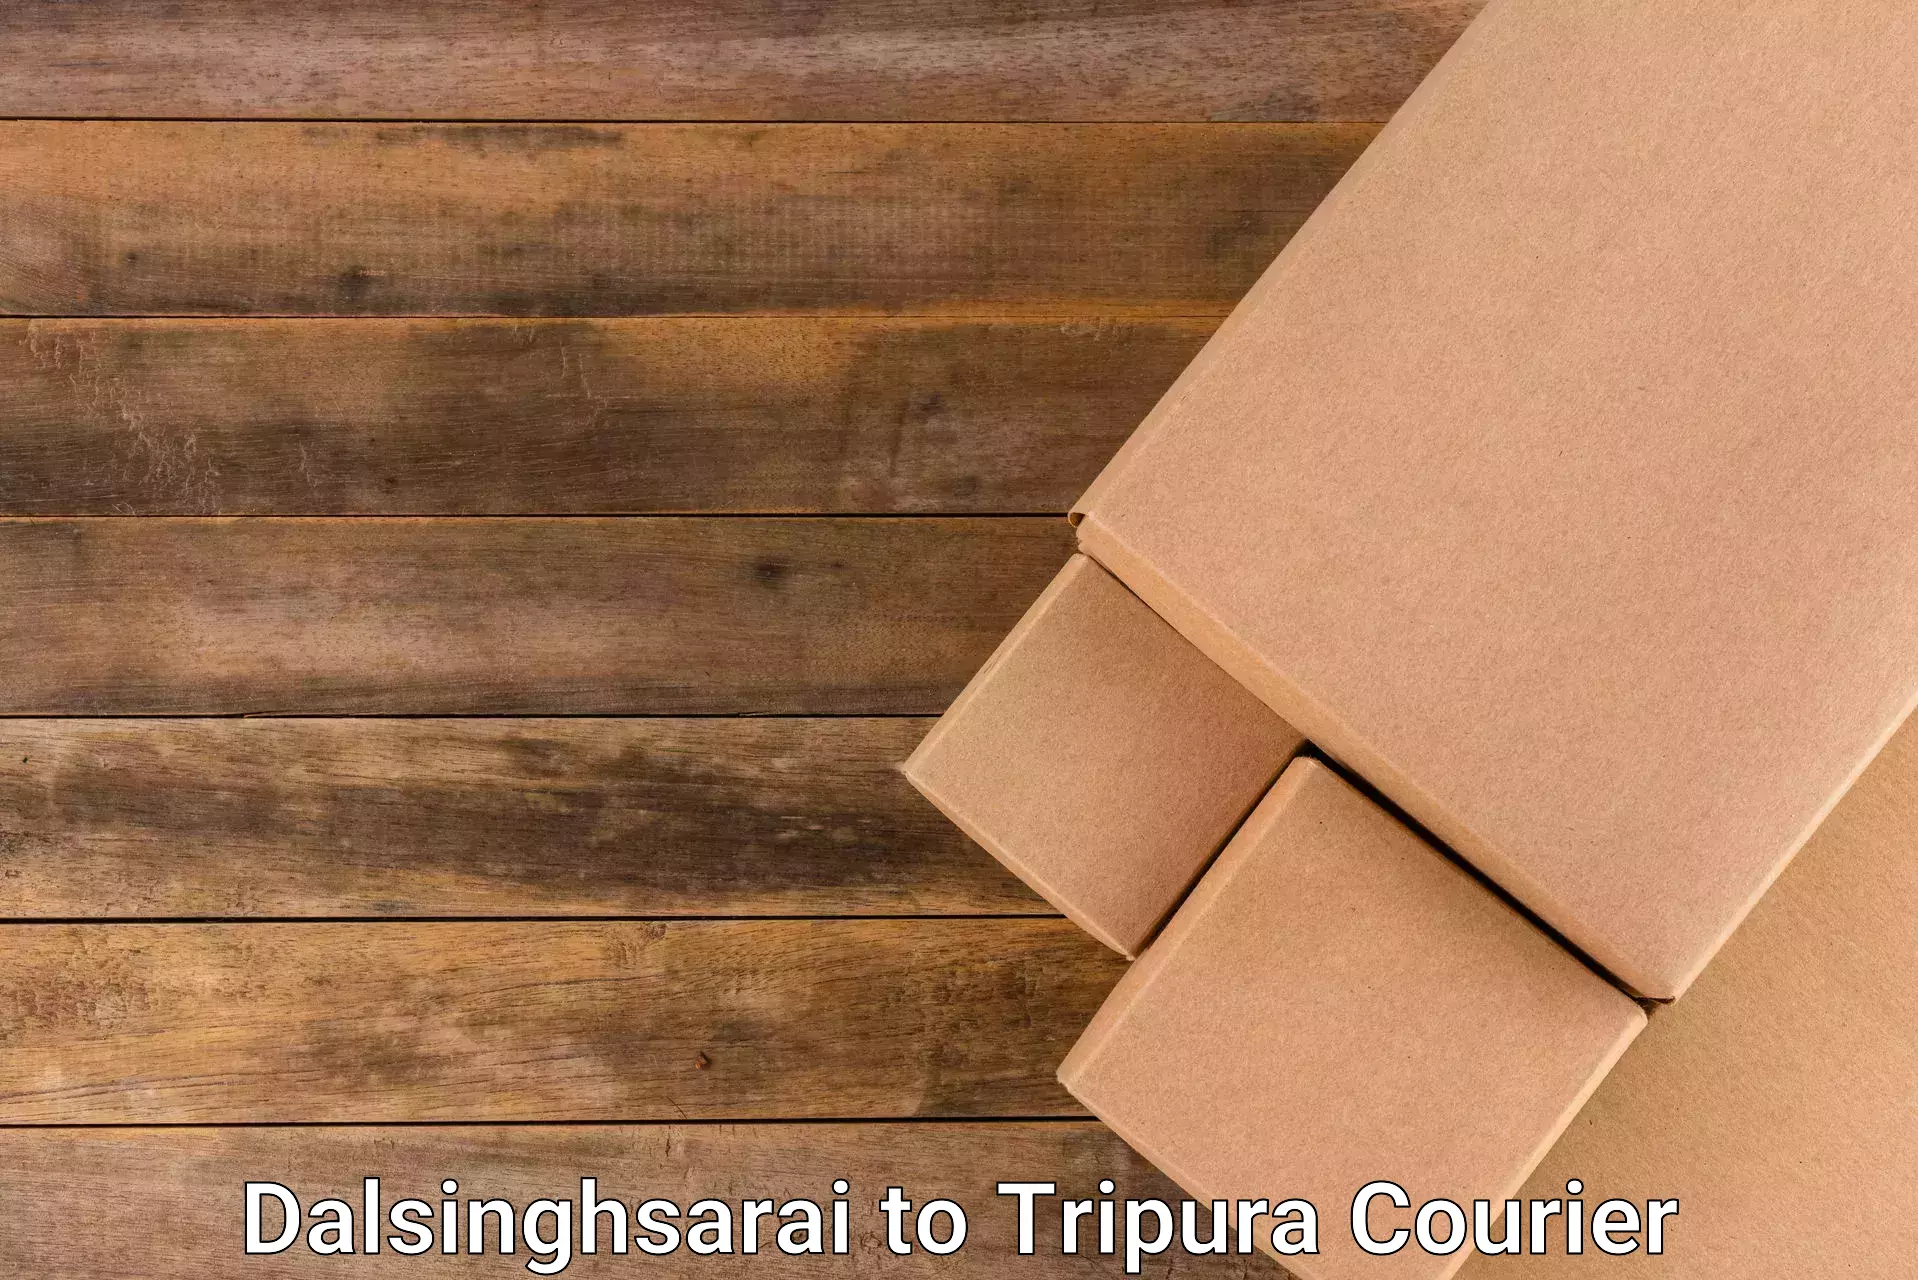 Premium delivery services Dalsinghsarai to Tripura